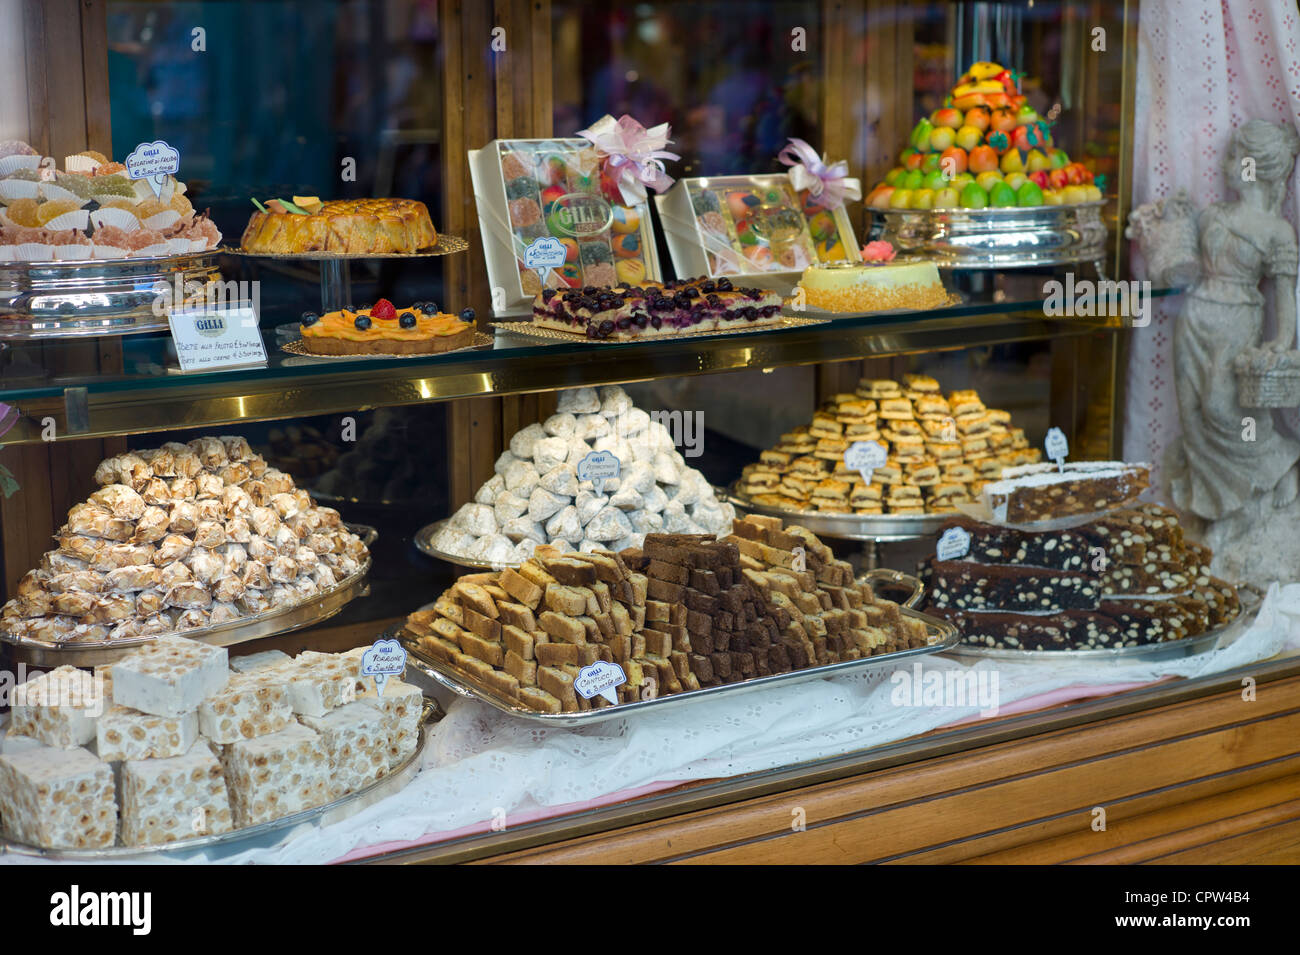 Les gâteaux, les sucreries et les pâtisseries en vitrine du luxe, patticeria caffe sweet shop Gilli, dans Florence, Toscane, Italie Banque D'Images